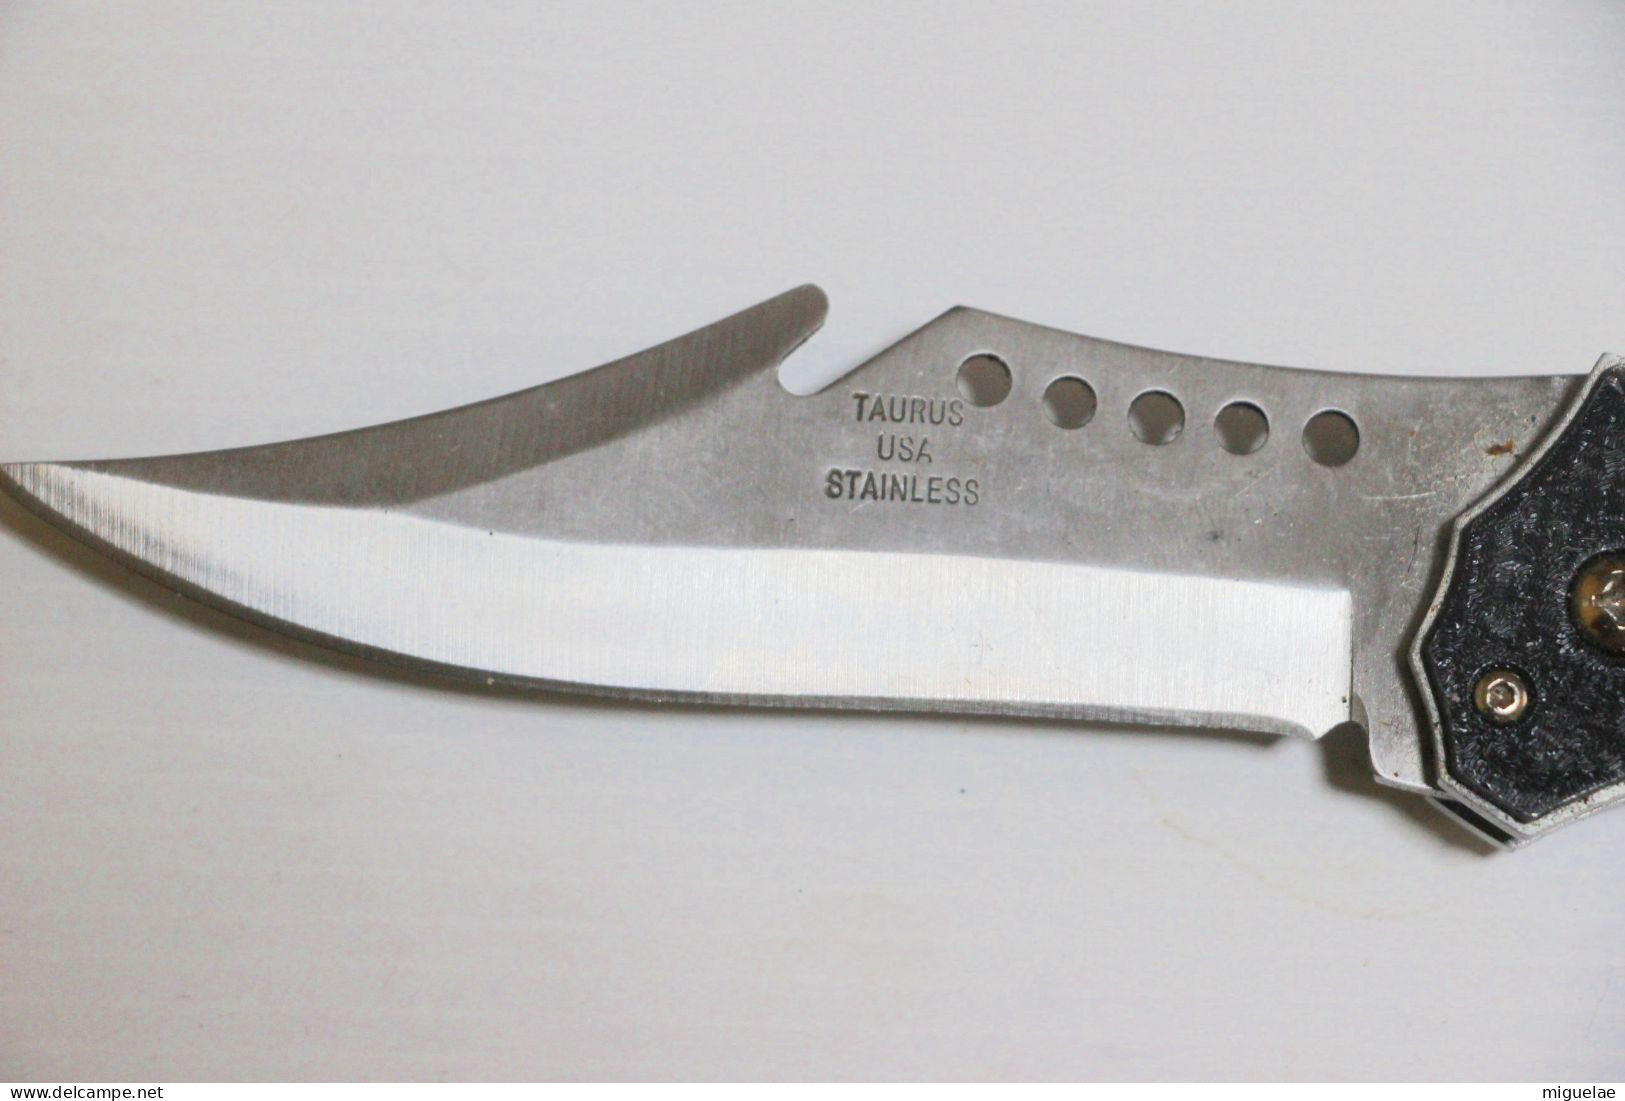 paire de couteaux à ouverture automatique de la marque américaine Taurus